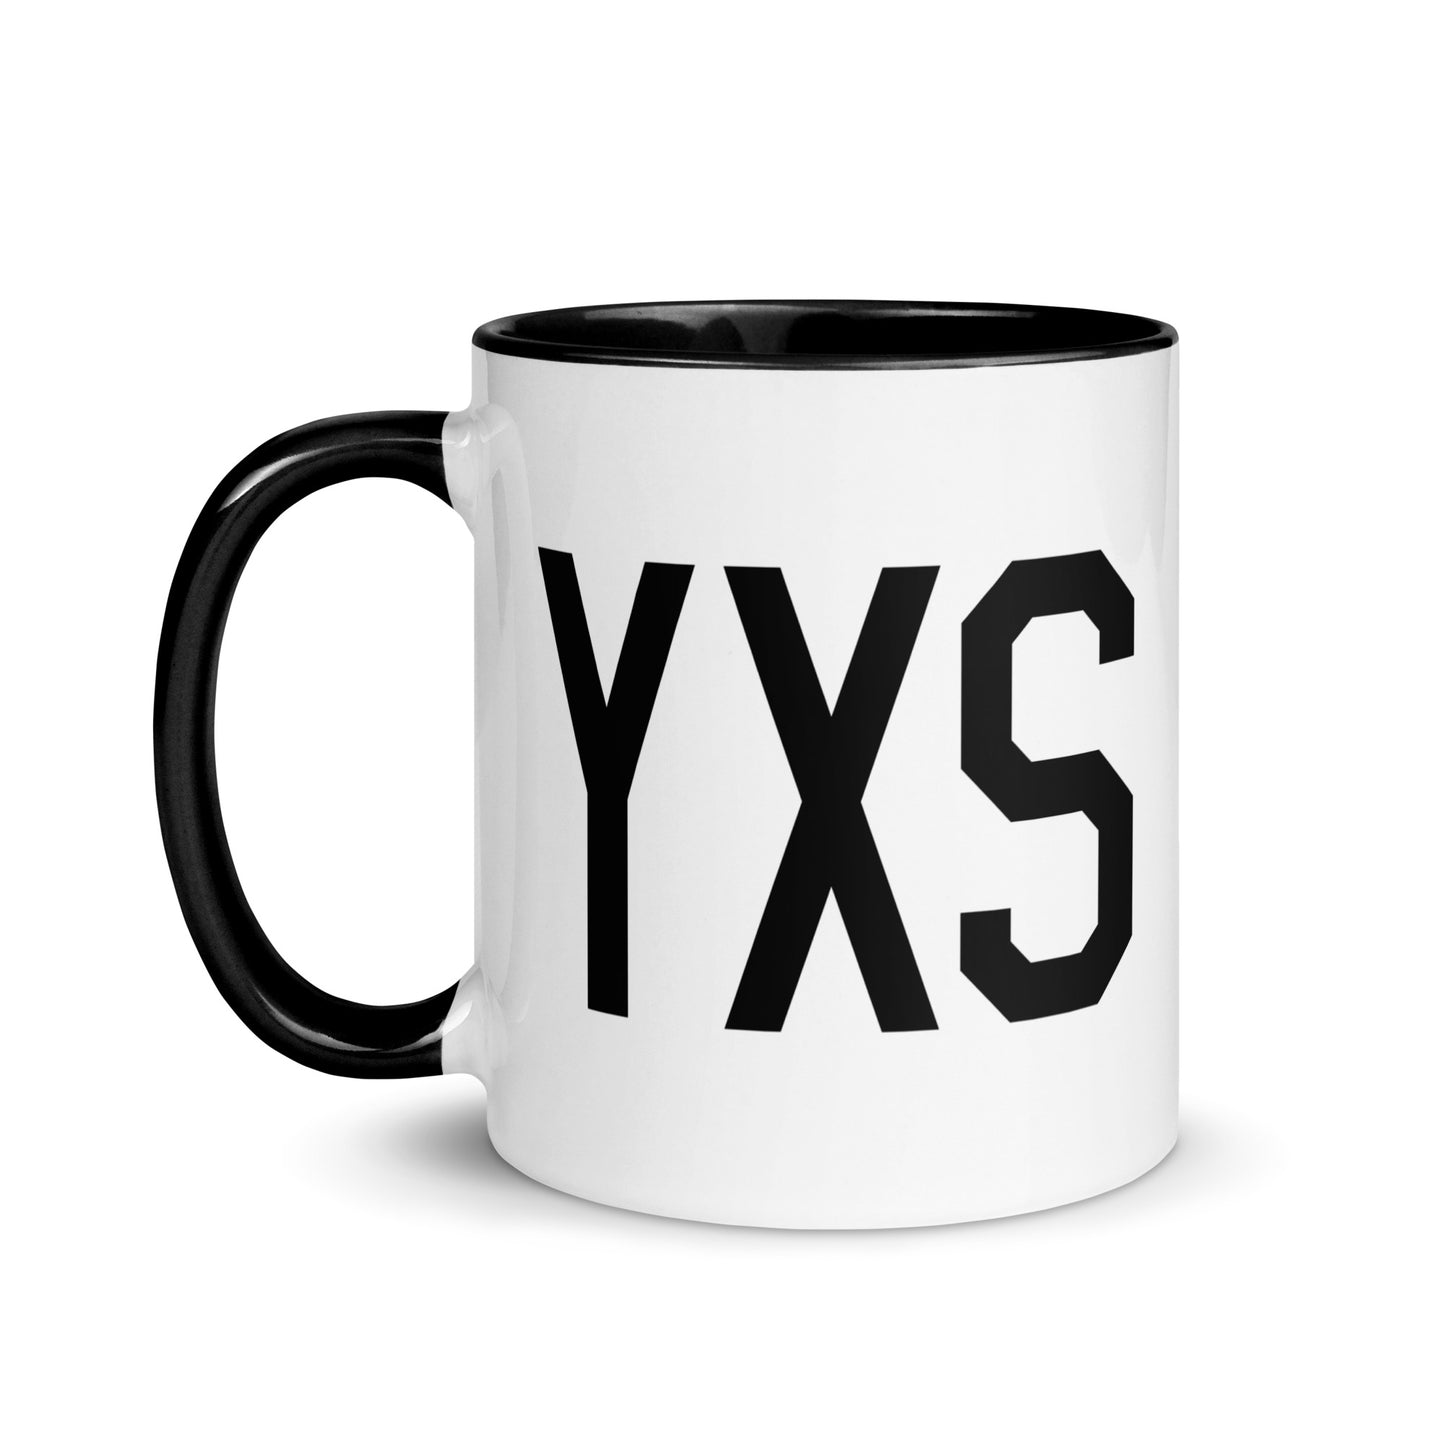 Aviation-Theme Coffee Mug - Black • YXS Prince George • YHM Designs - Image 03